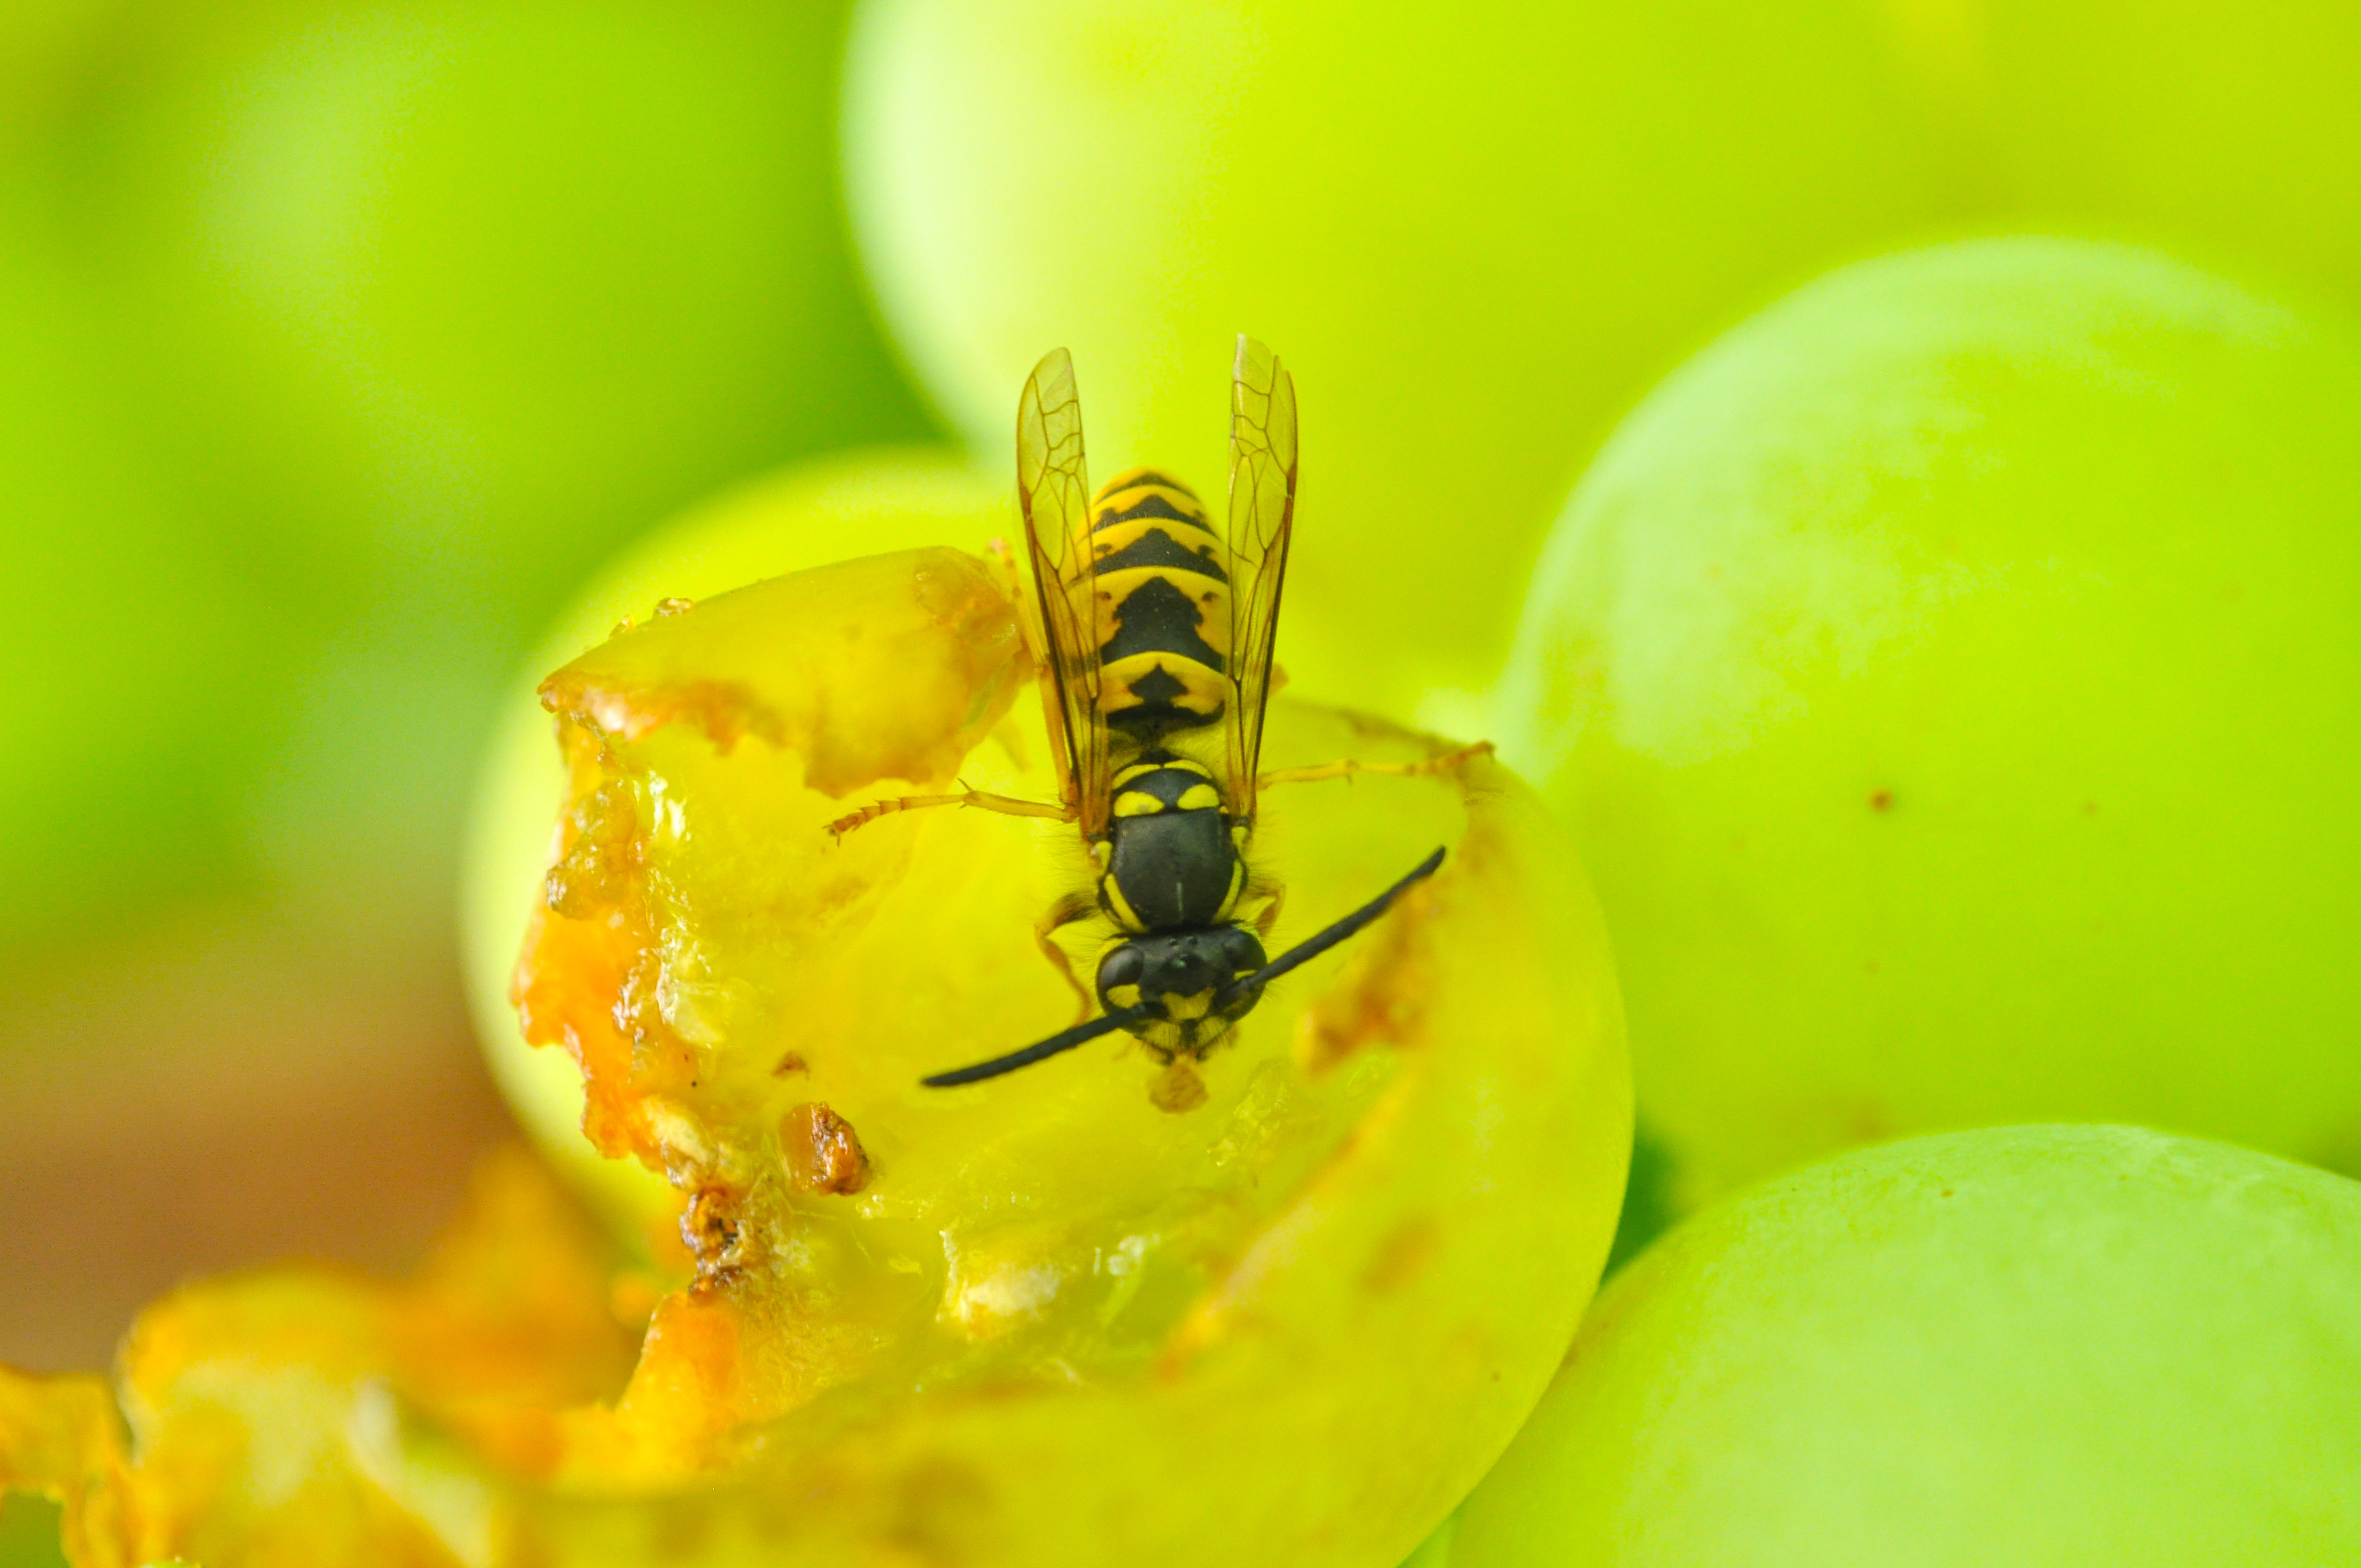 A wasp eating grapes (Thinkstock/PA)